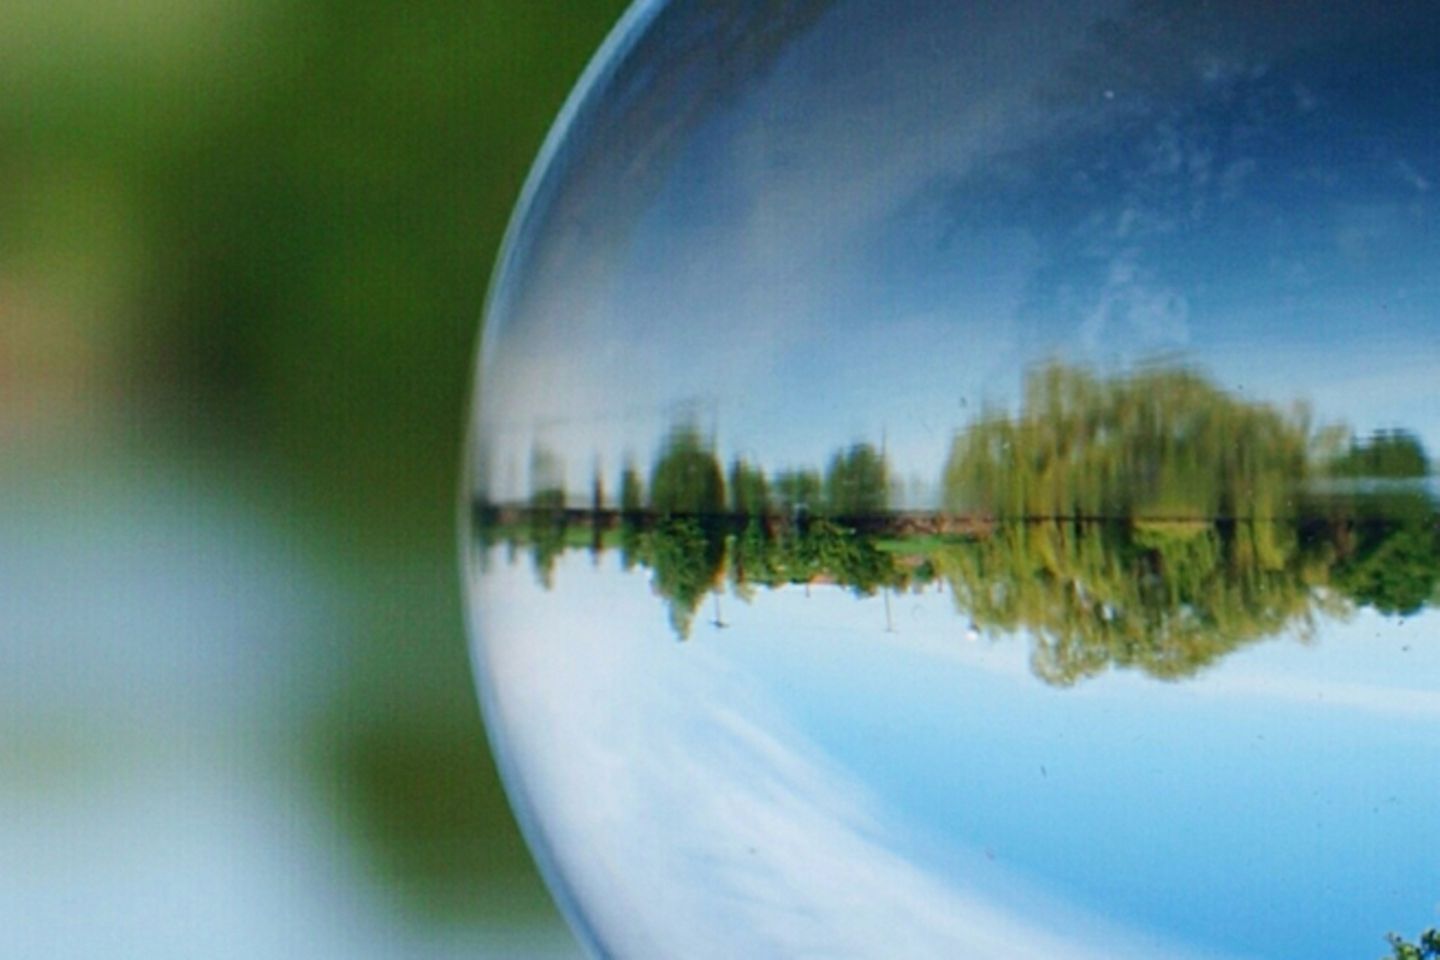 Mano sosteniendo una bola de cristal en la que se ve a lo lejos un lago y una orilla verde.